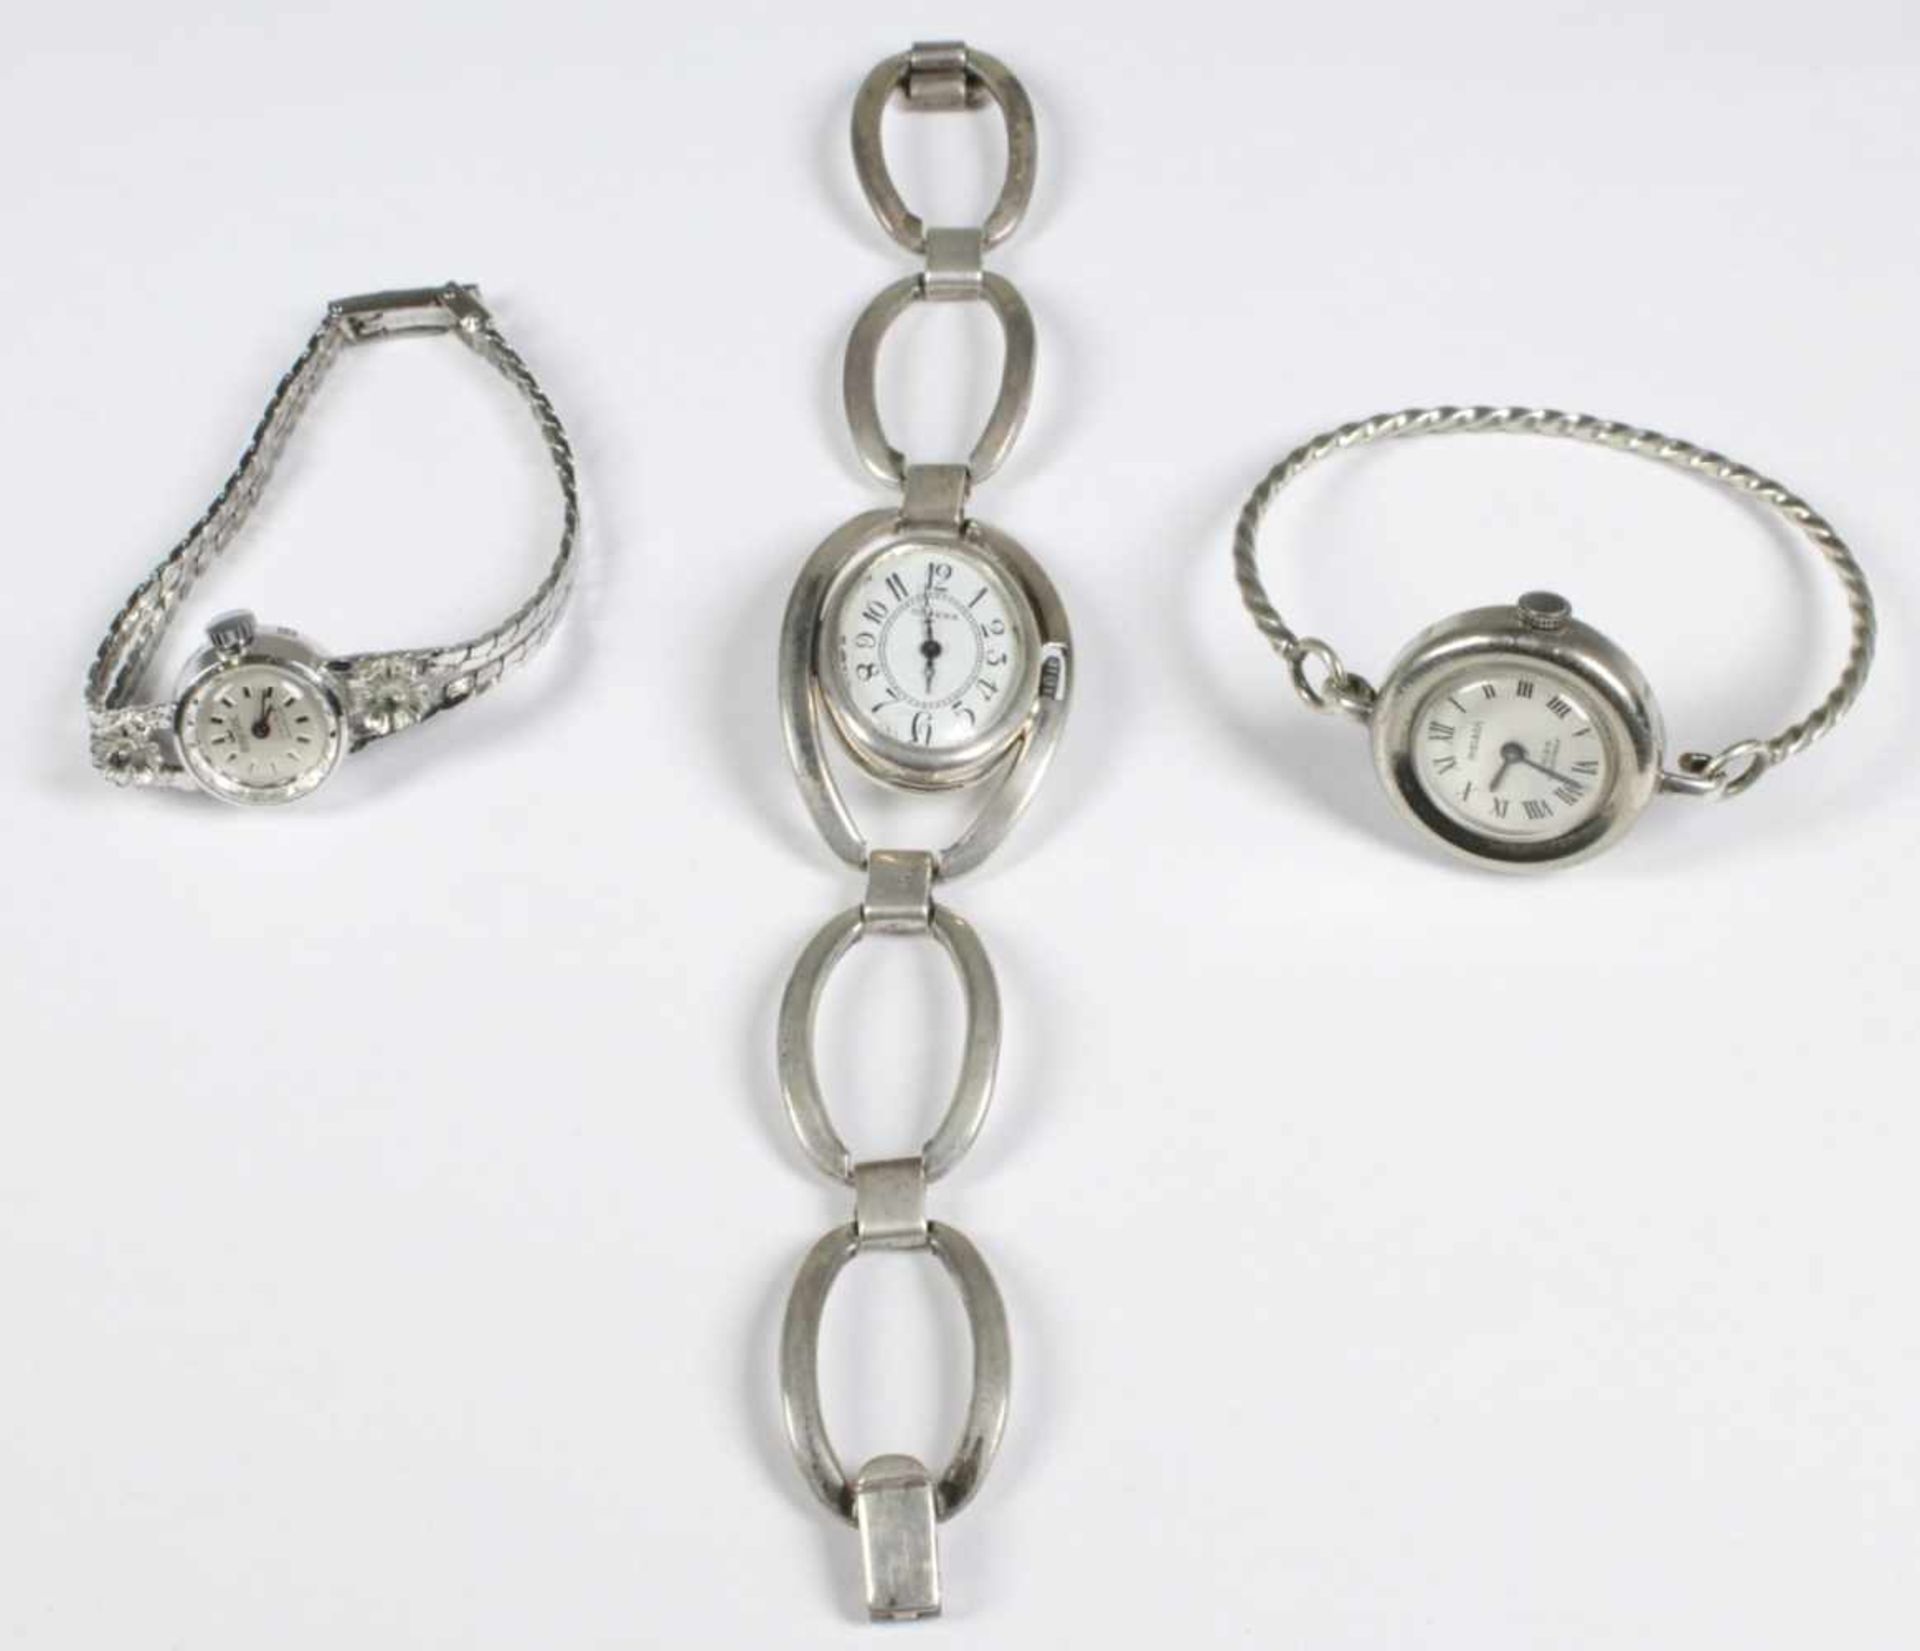 Drei Damen-Armbanduhren, um 1965, Silber, unterschiedliche Formen, Größen und Dekore,Funktion